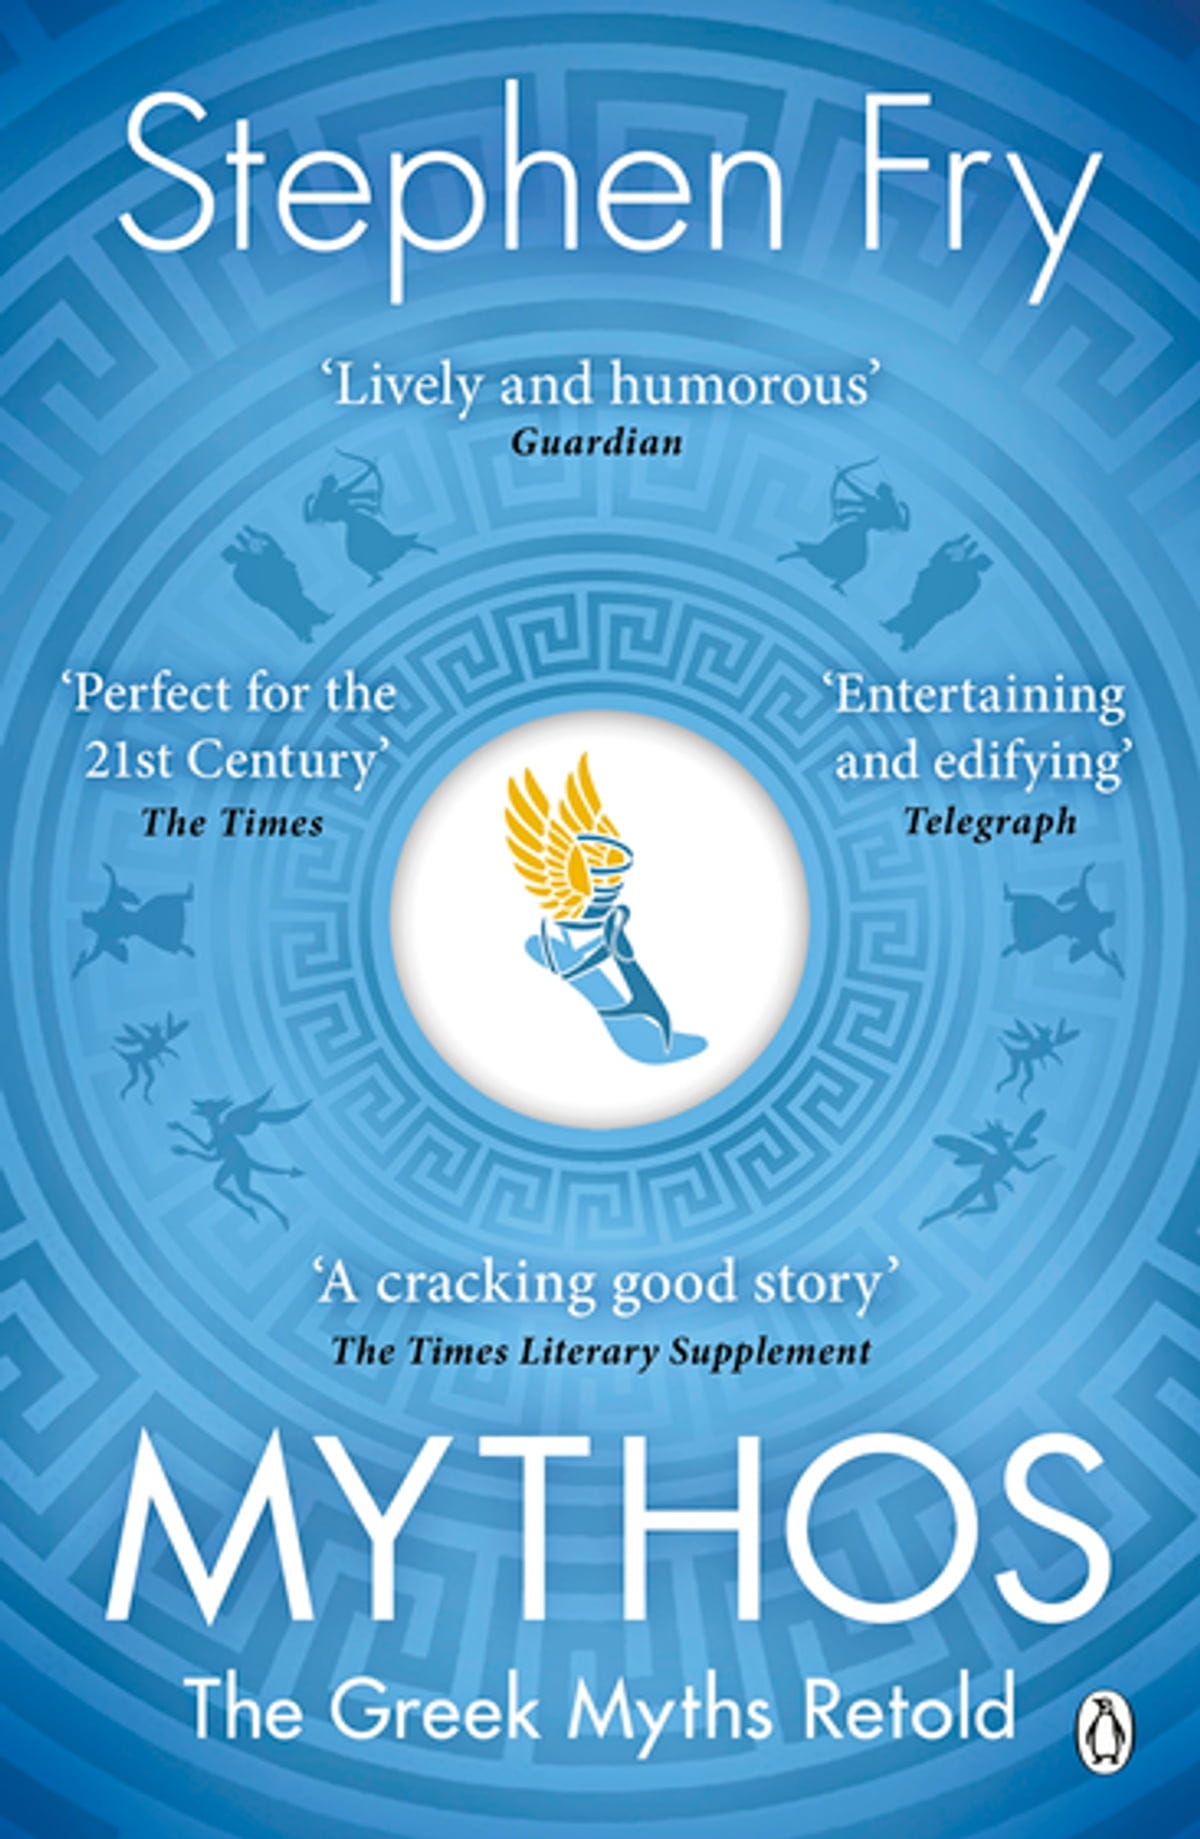 Mythos eBook by Stephen Fry - EPUB | Rakuten Kobo United Kingdom